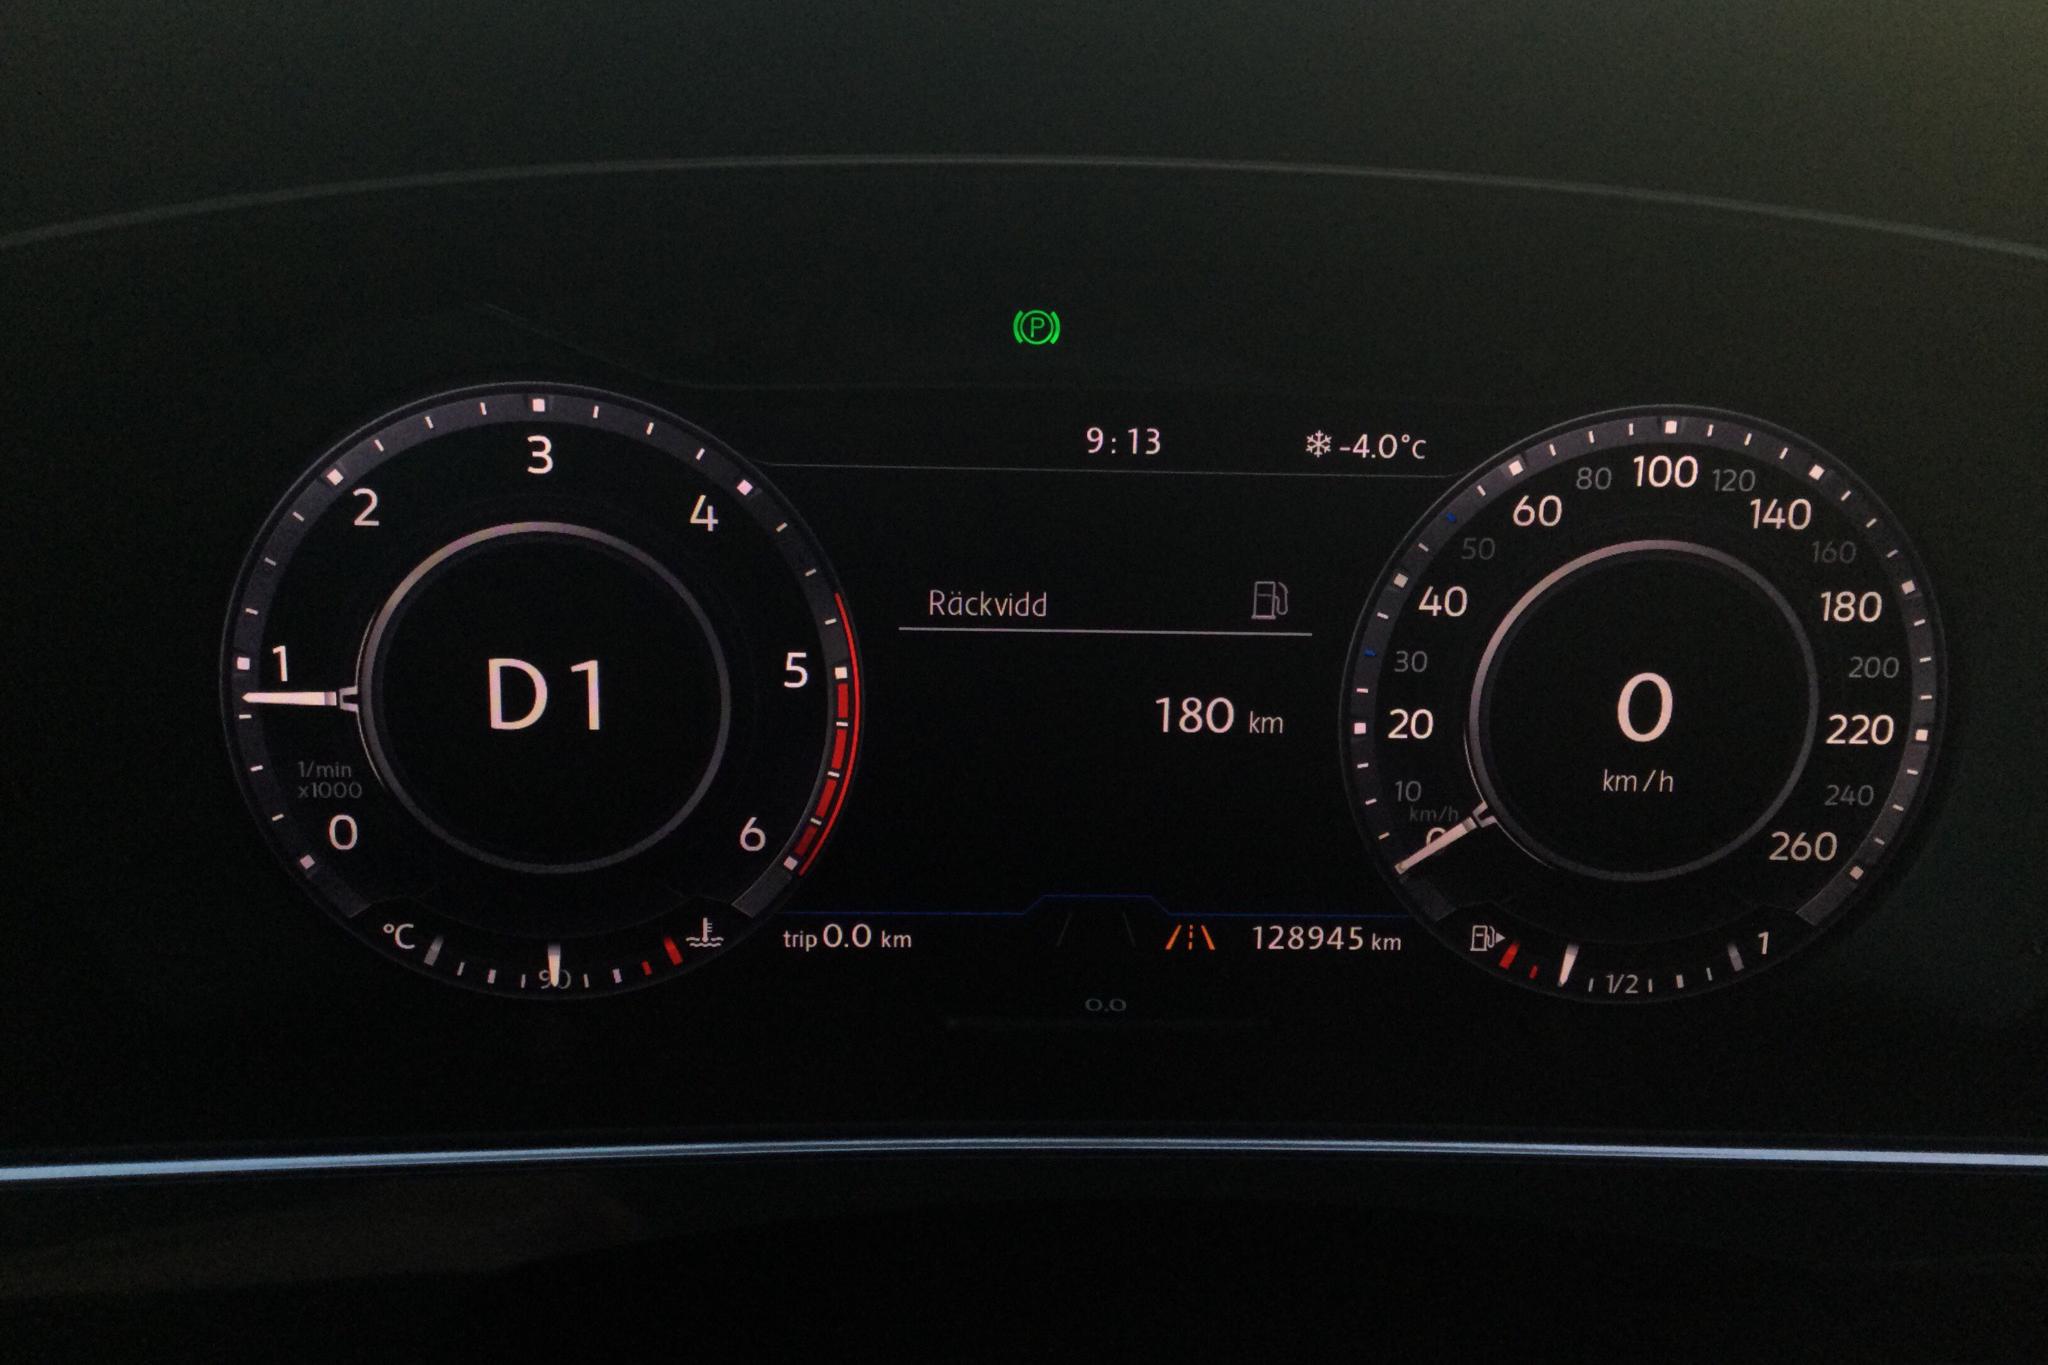 VW Tiguan 2.0 TDI 4MOTION (190hk) - 128 940 km - Automatic - black - 2017